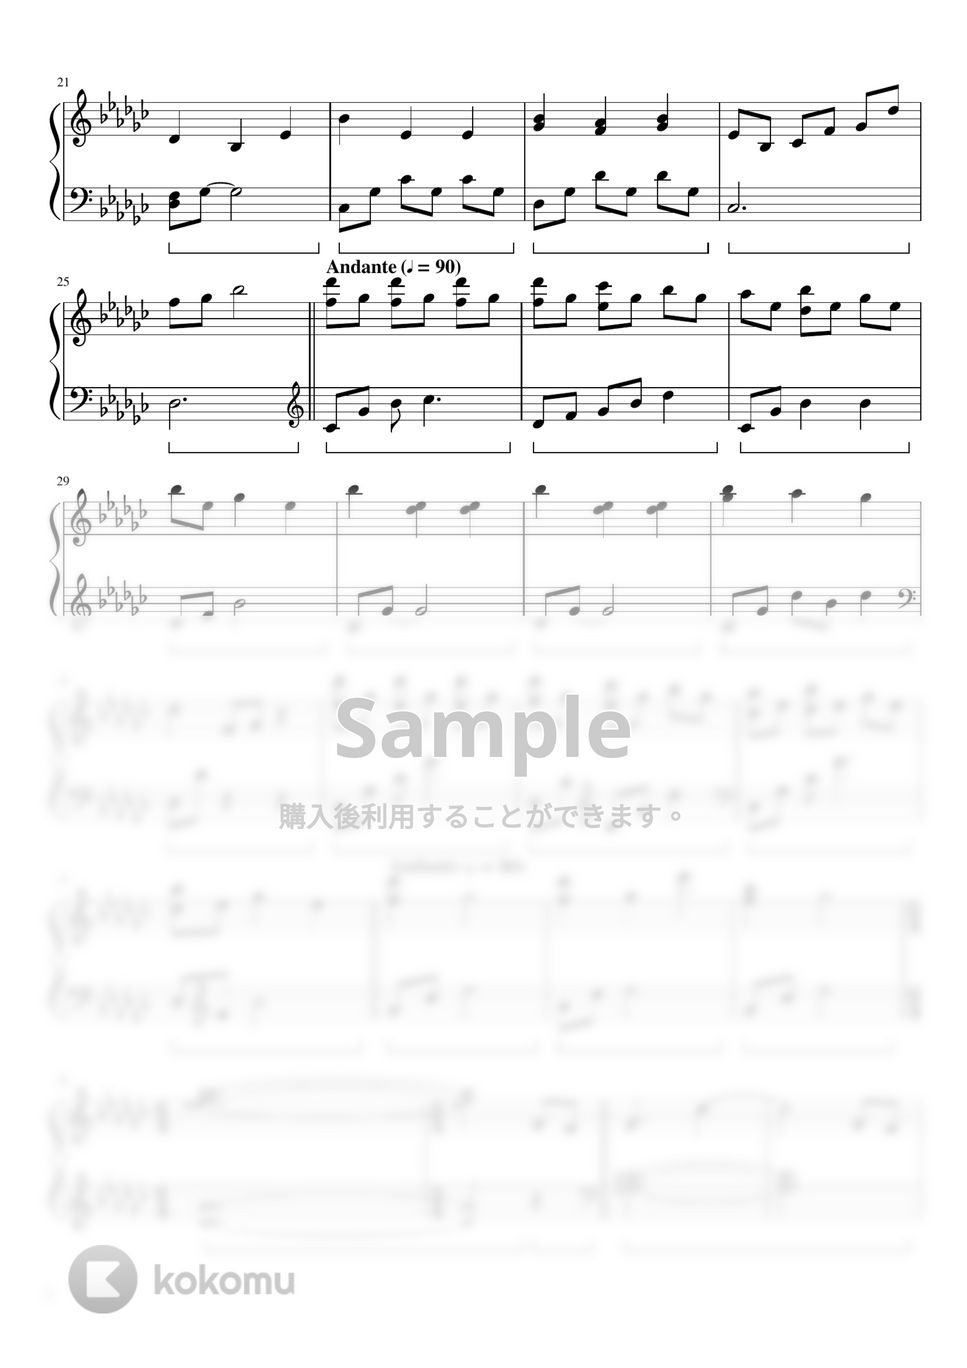 ドラマ「アライブ がん専門医のカルテ」 - アライブ -Piano Version- by ちゃんRINA。